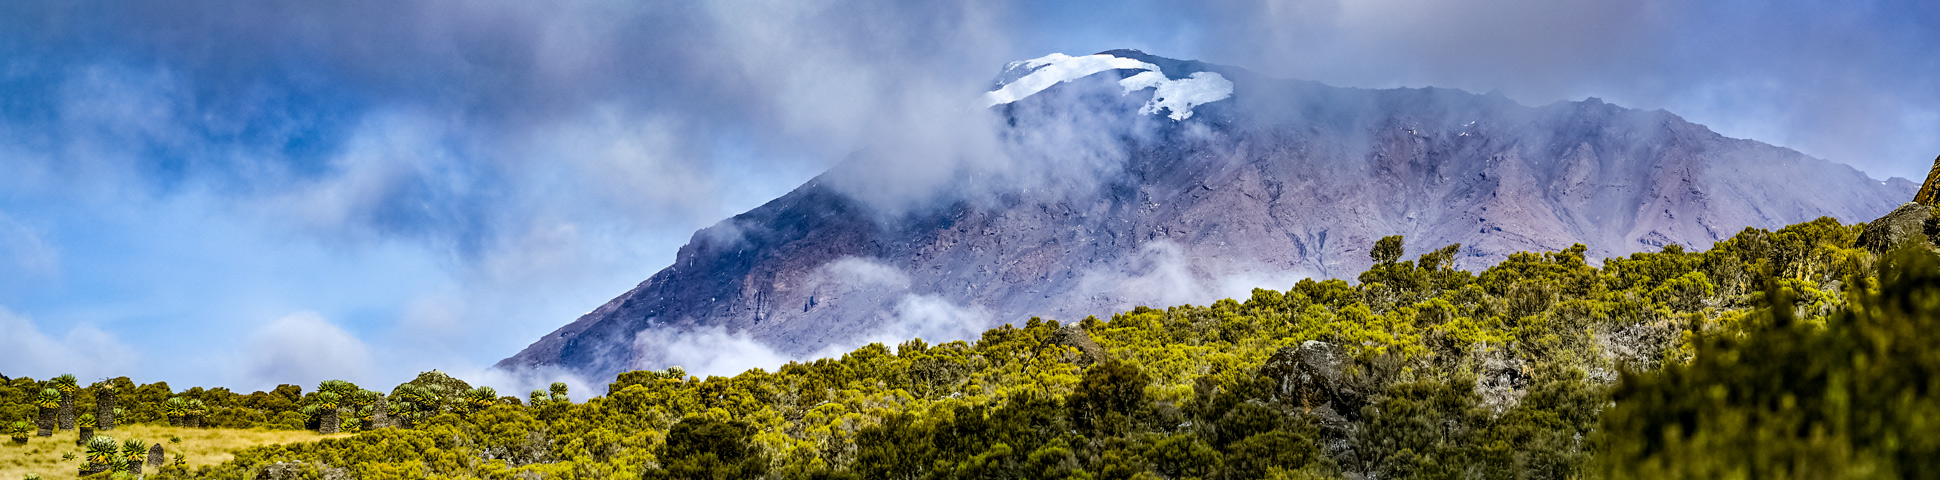 6-Day Mount Kilimanjaro on Marangu Route